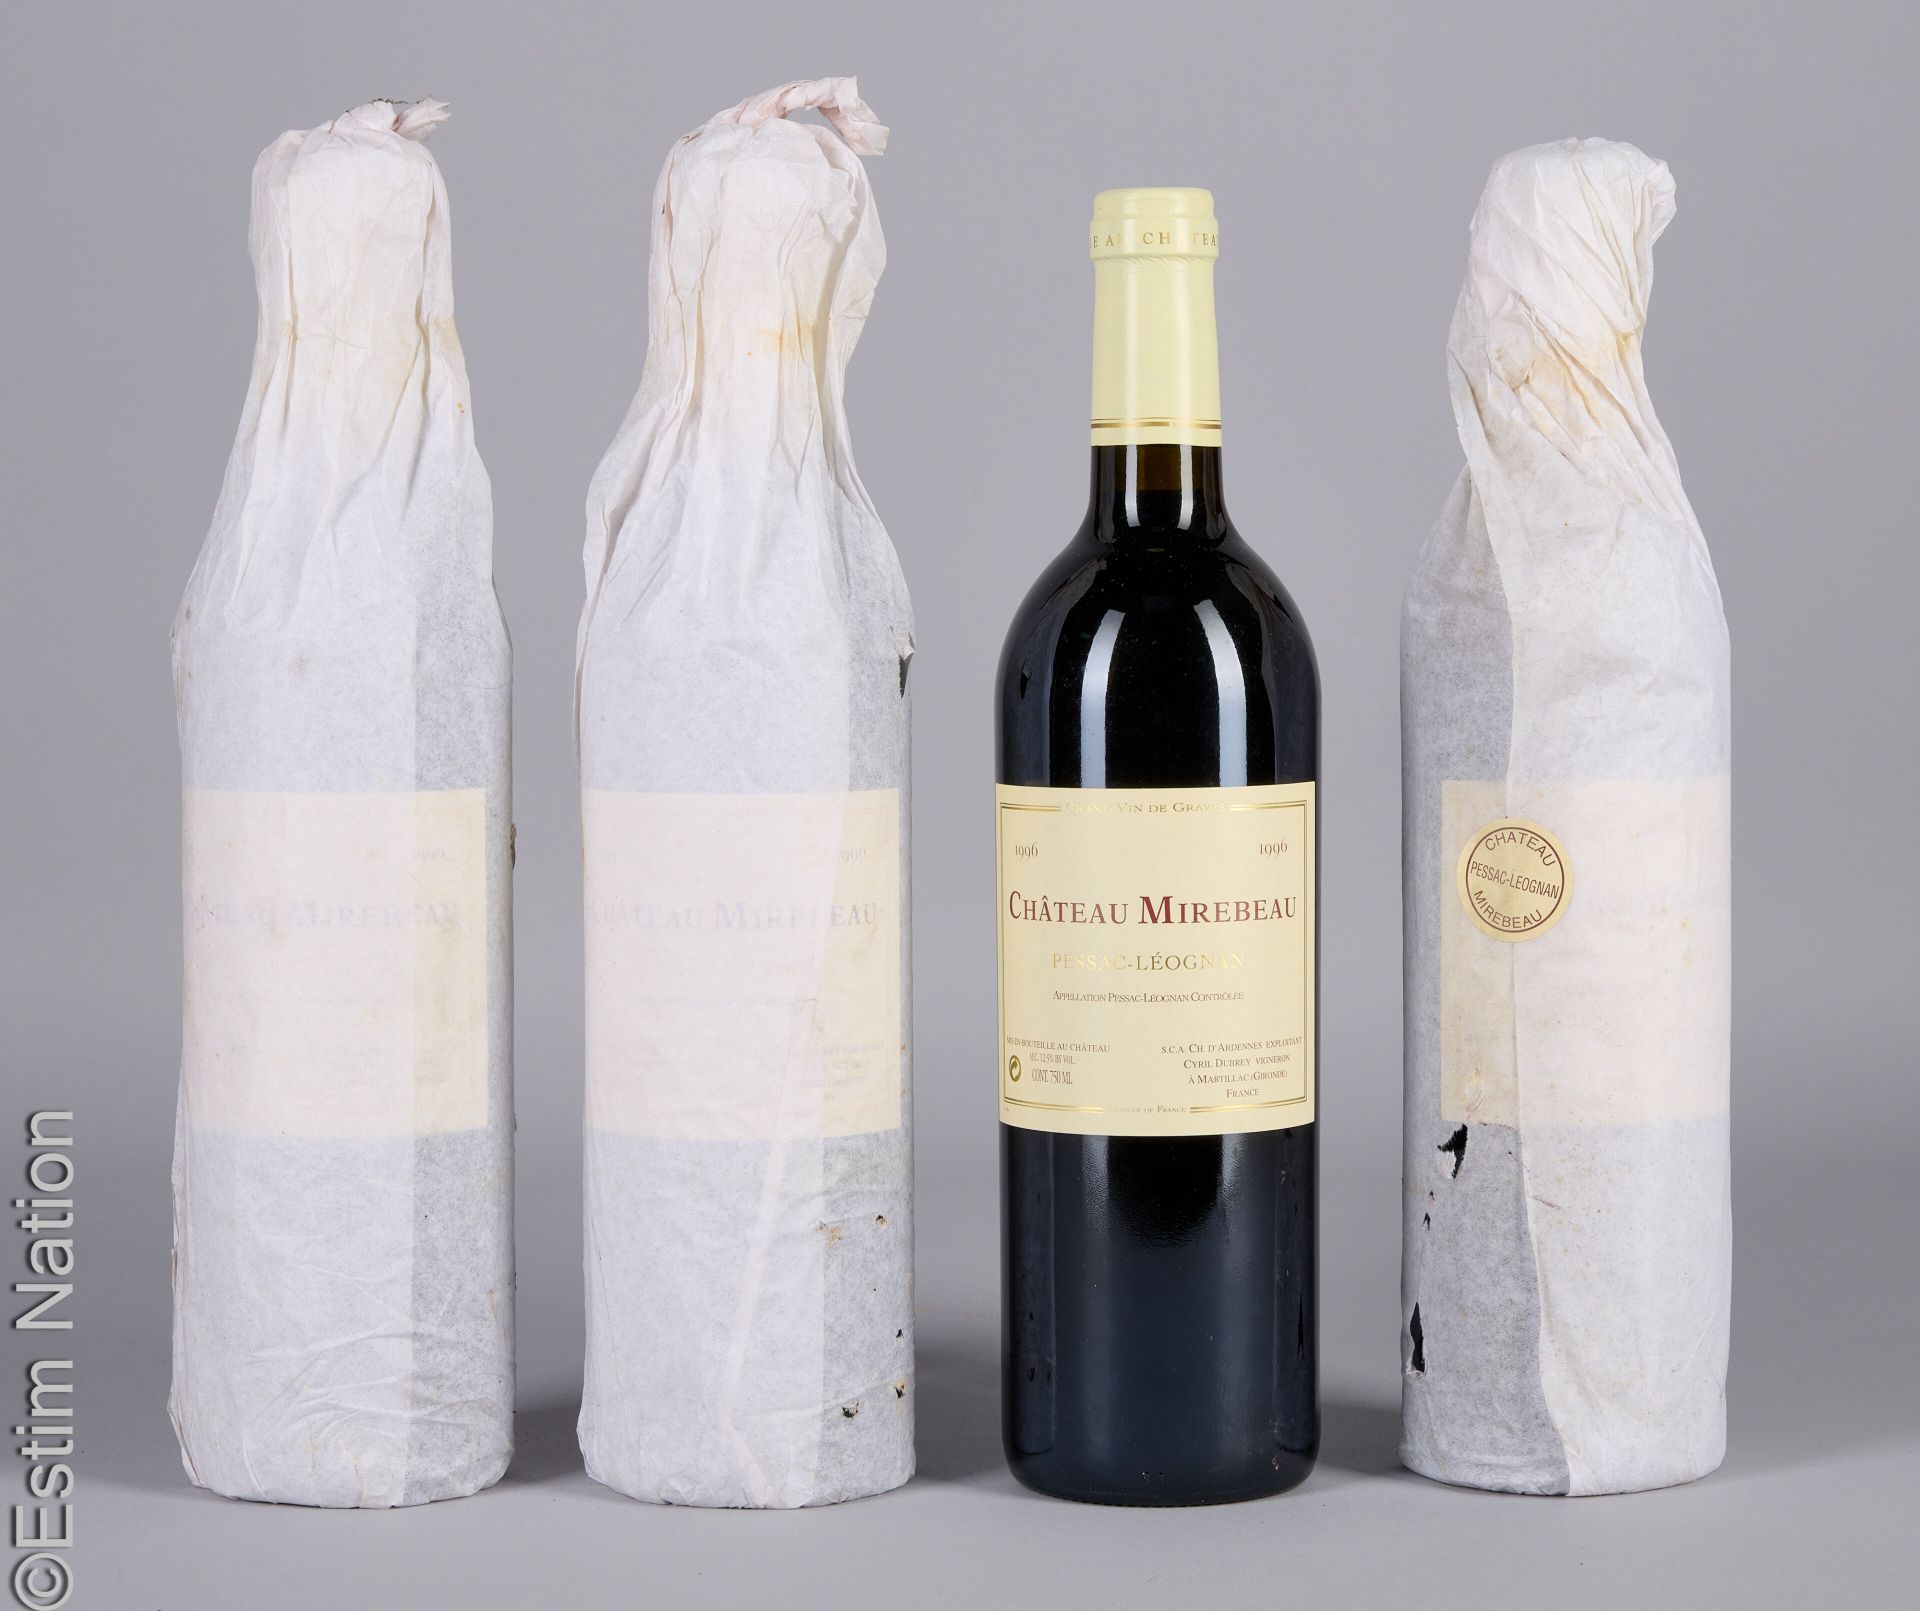 BORDEAUX 4 瓶 ChÂTEAU MIREBEAU 1996 Pessac-Leognan 红葡萄酒